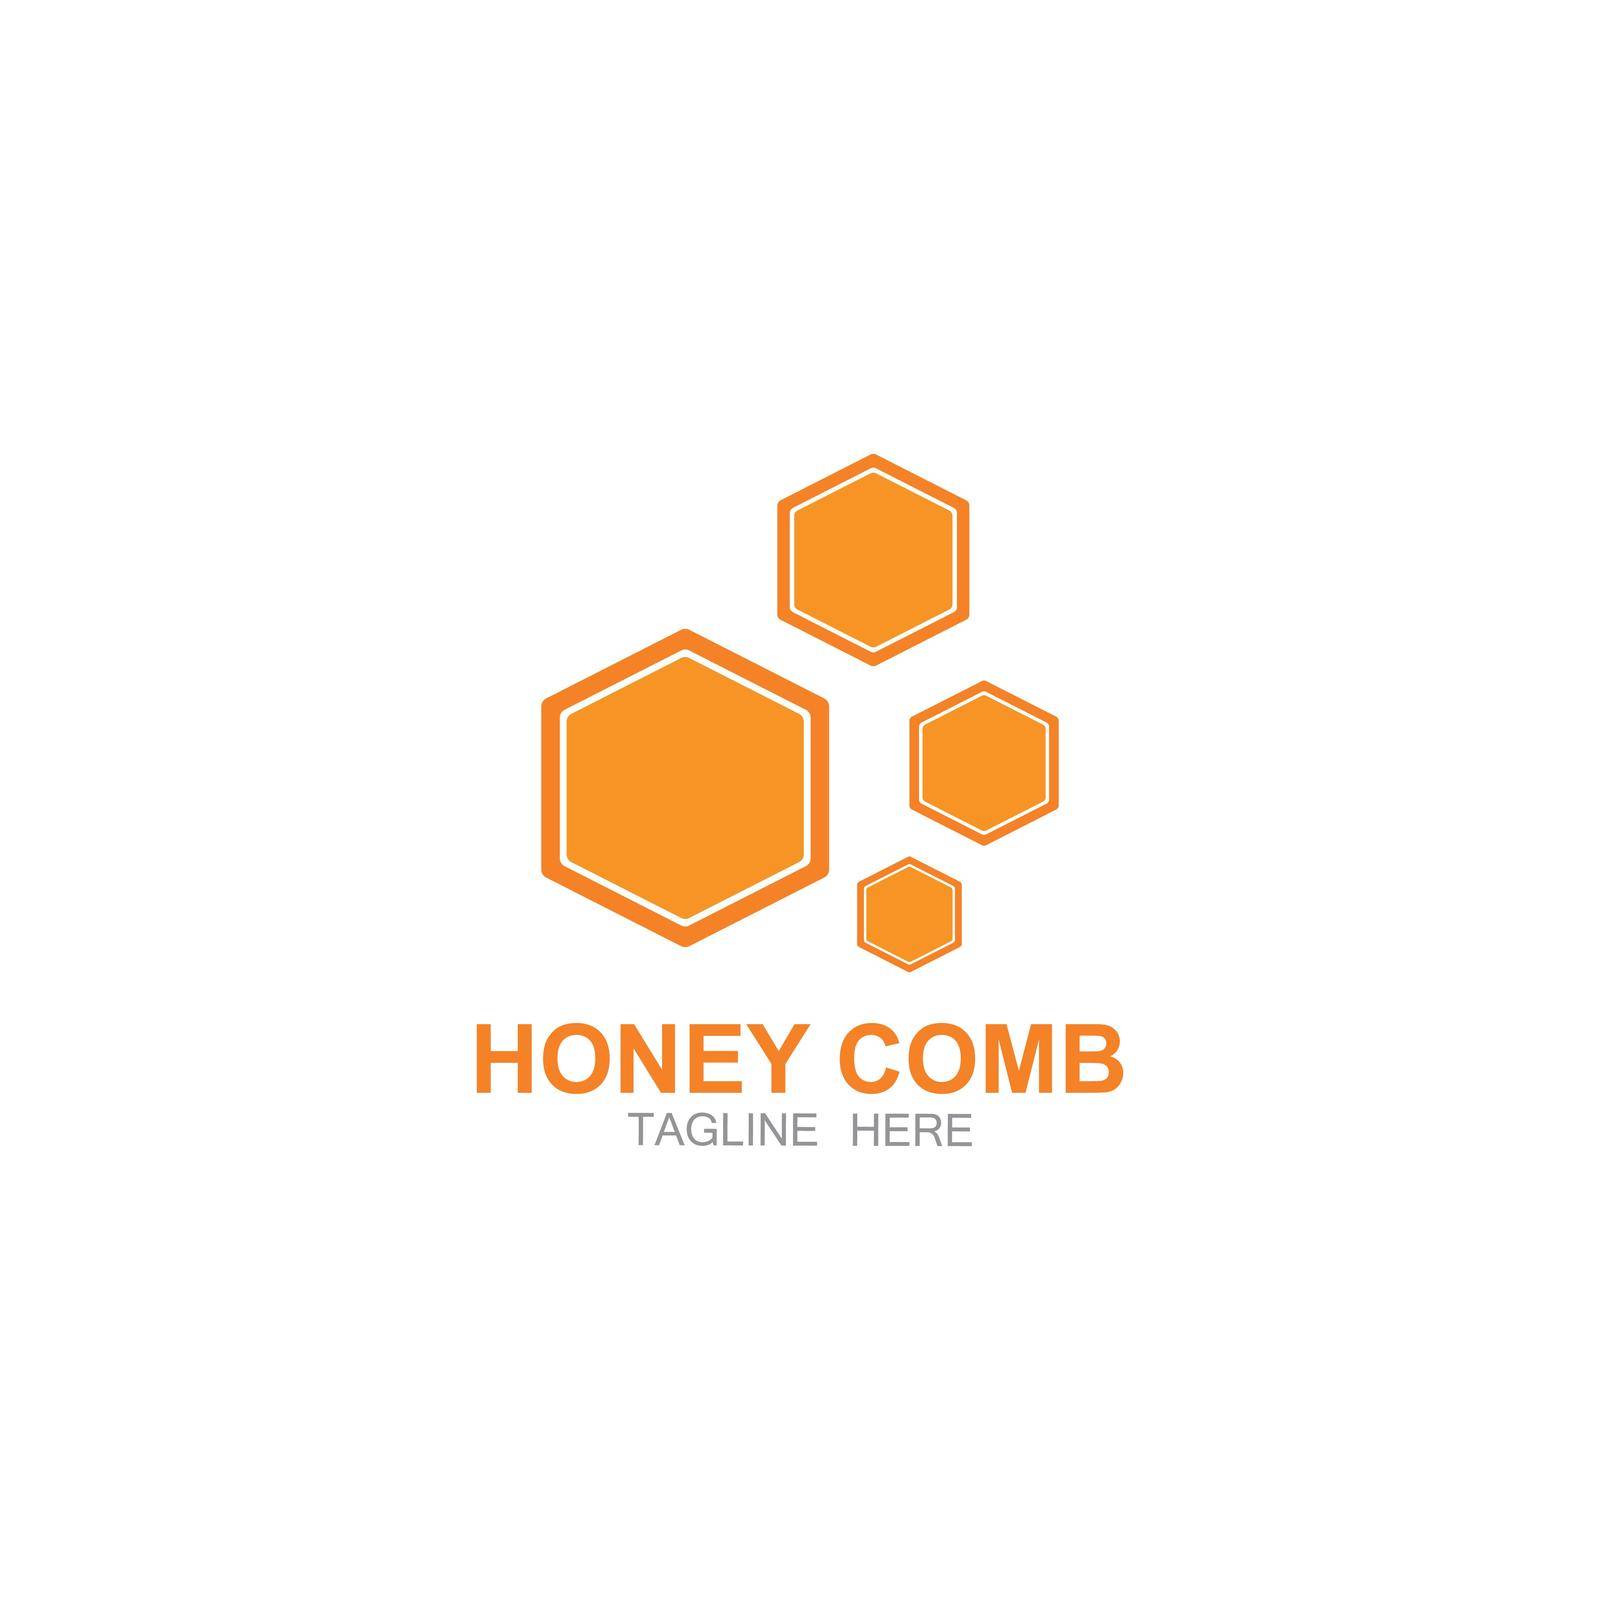 Honey comb logo vector icon concept by kosasihindra55